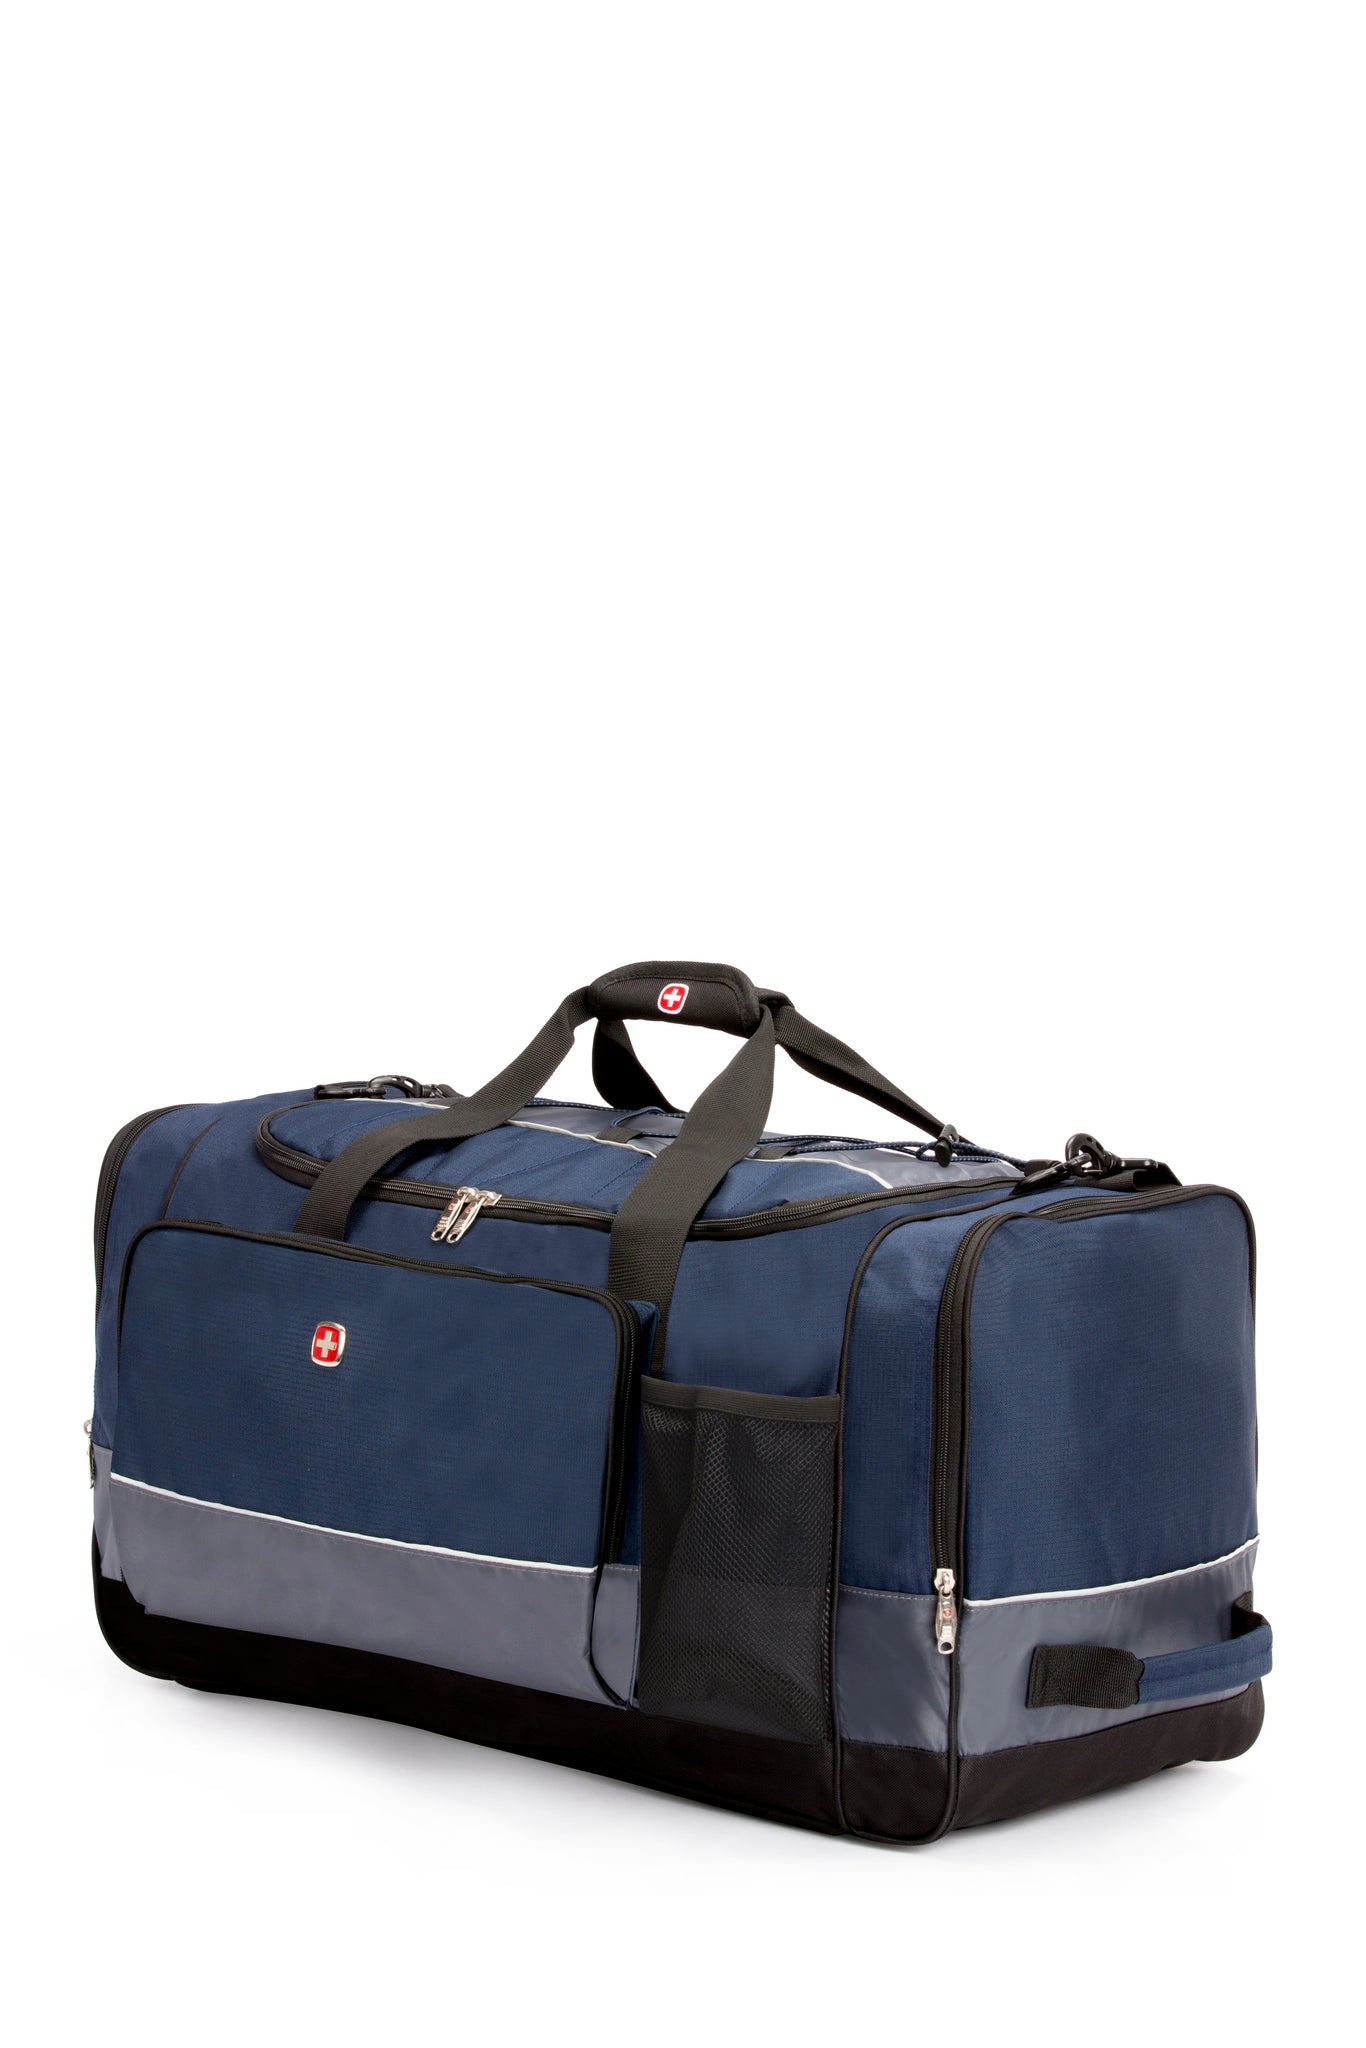 SwissGear 9000 28" Apex Duffel Bag